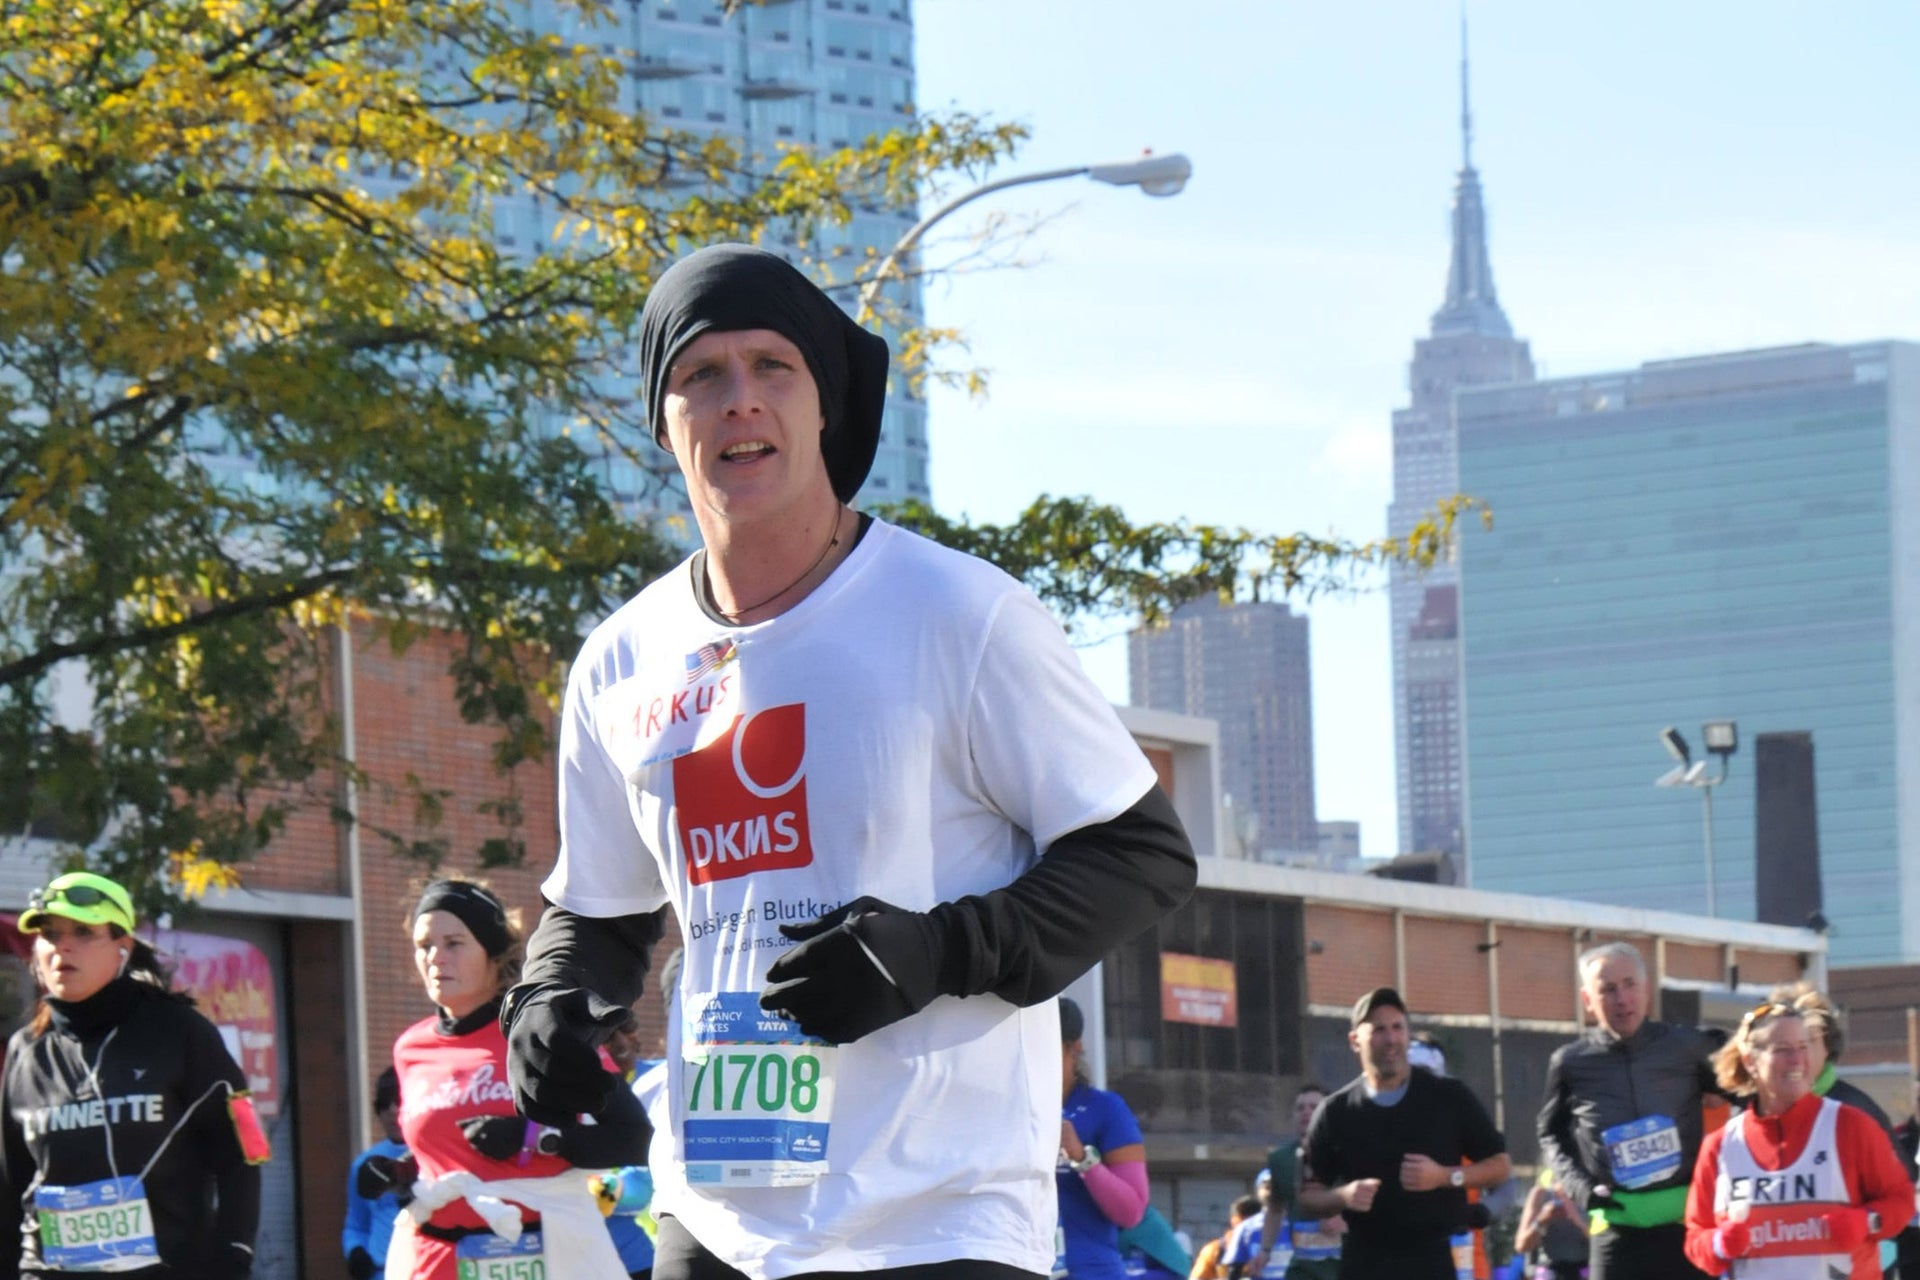 Der New York Marathon war sein großer Traum